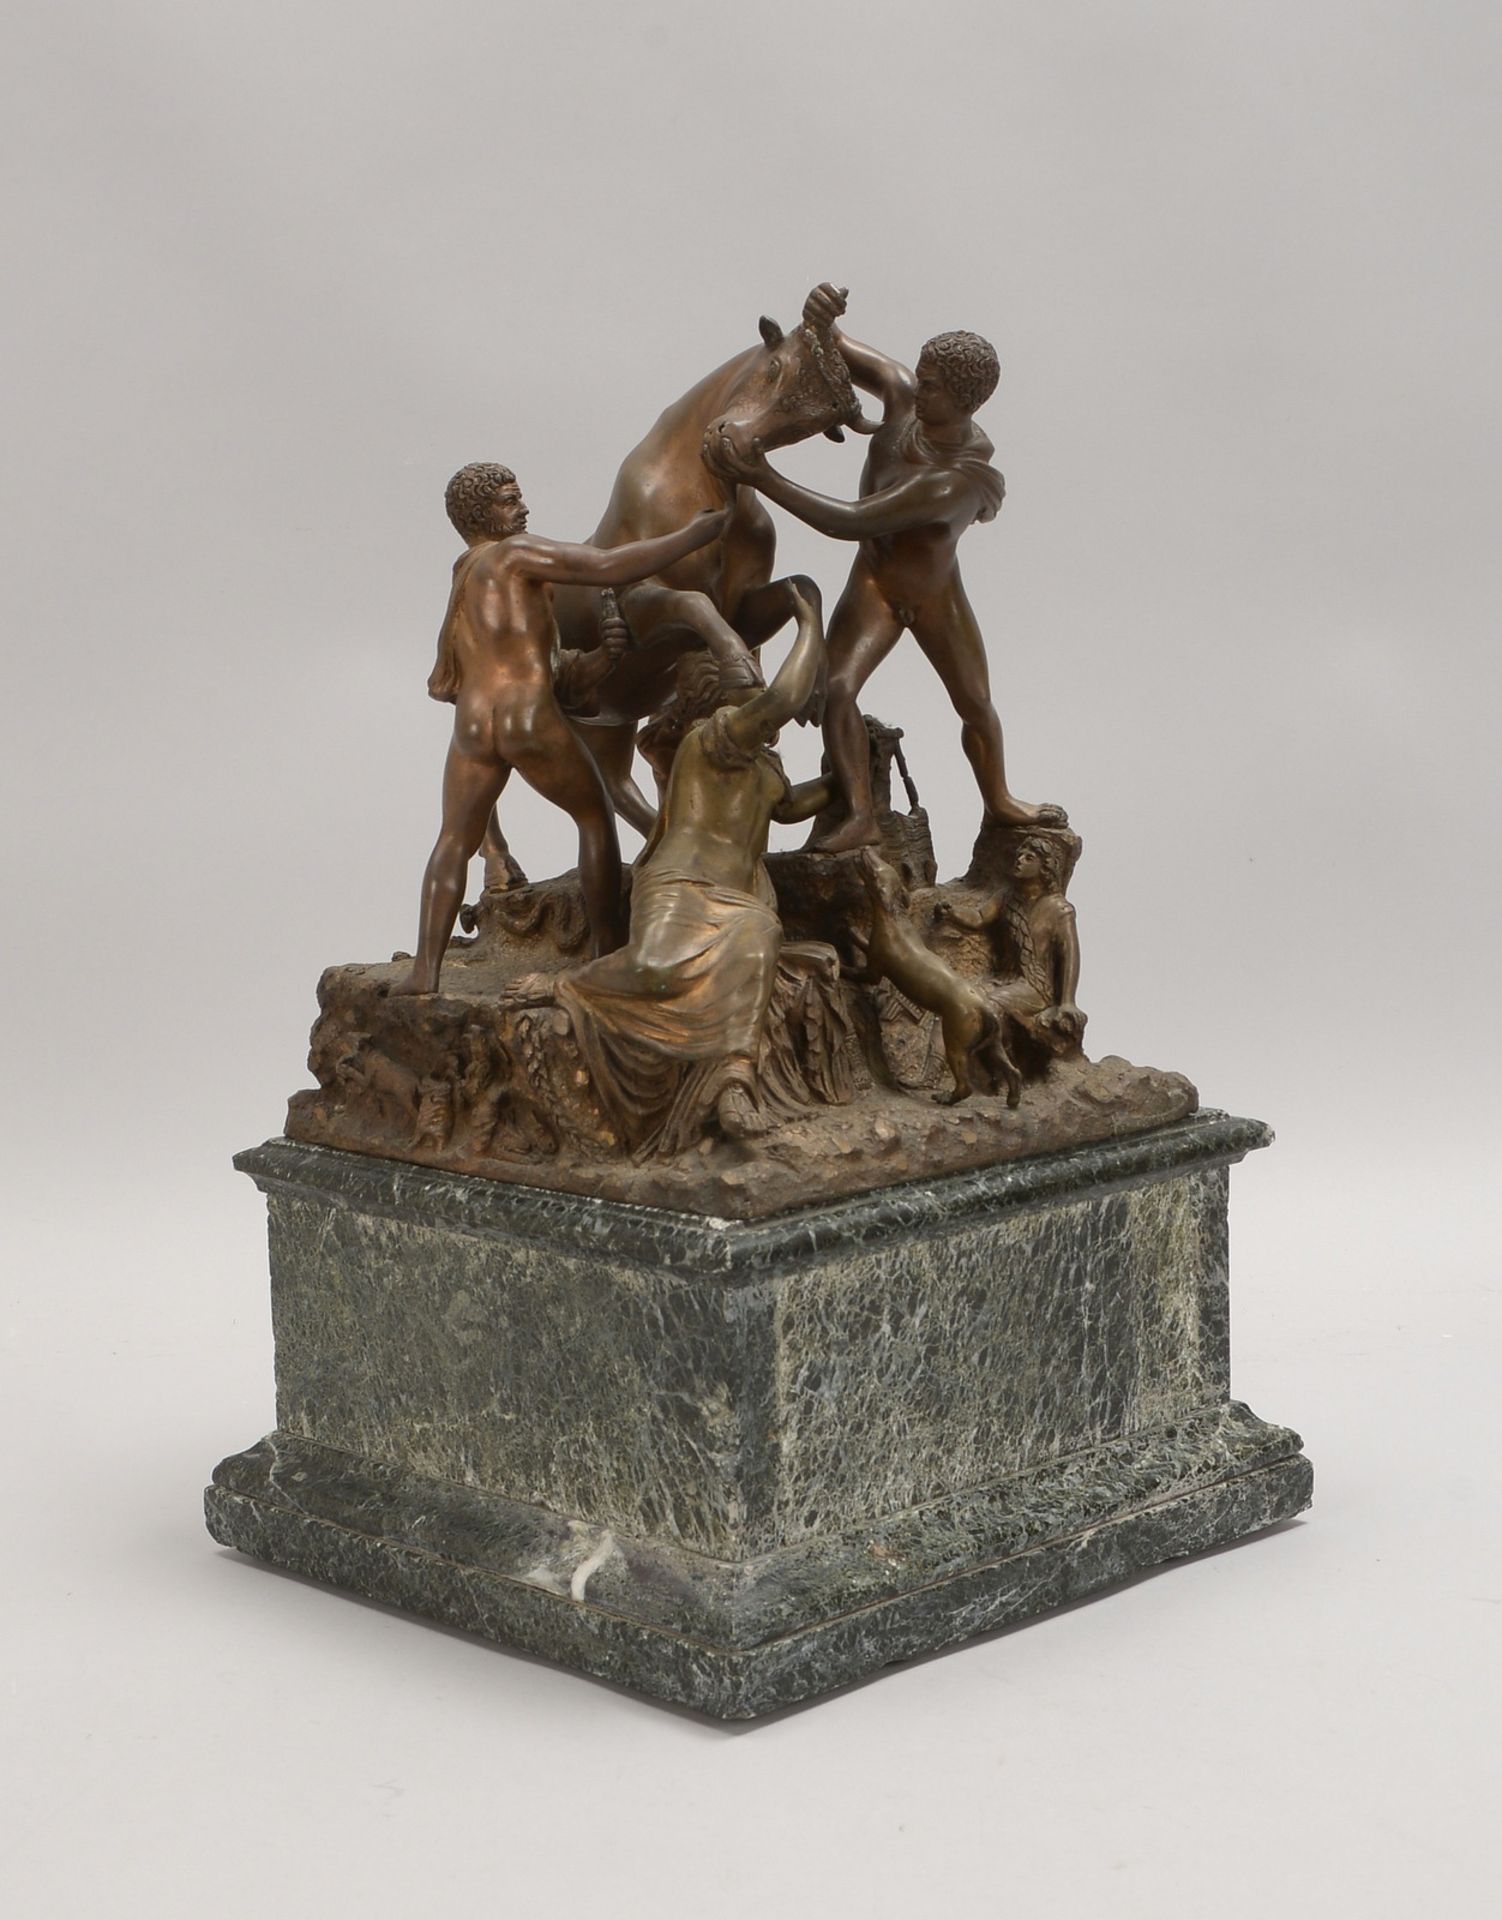 Bronze-Figurengruppe, 'Farnesischer Stier', lose auf schwerem Marmorsockel; Höhe 27 cm - Bild 3 aus 3